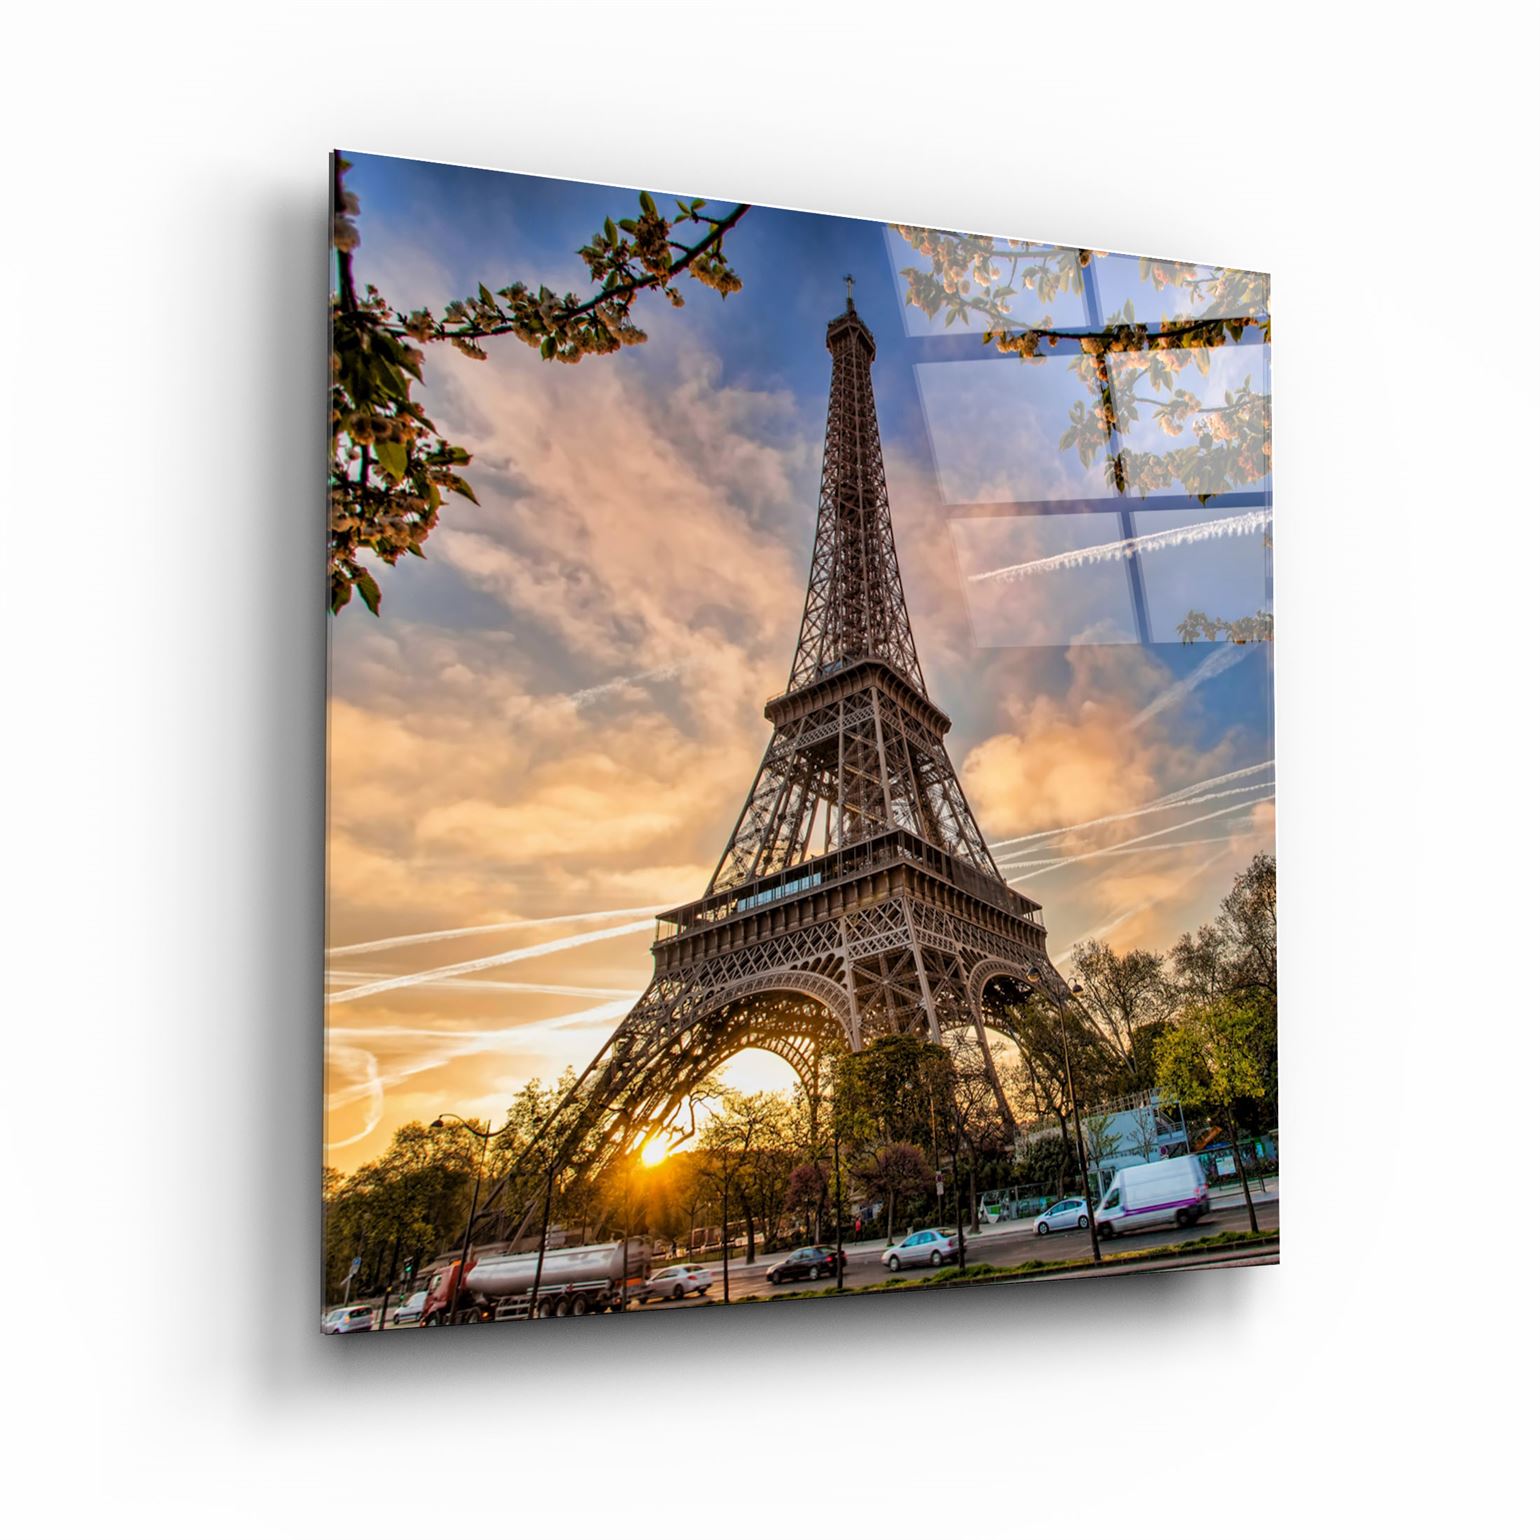 ・"Eiffel Tower"・Glass Wall Art